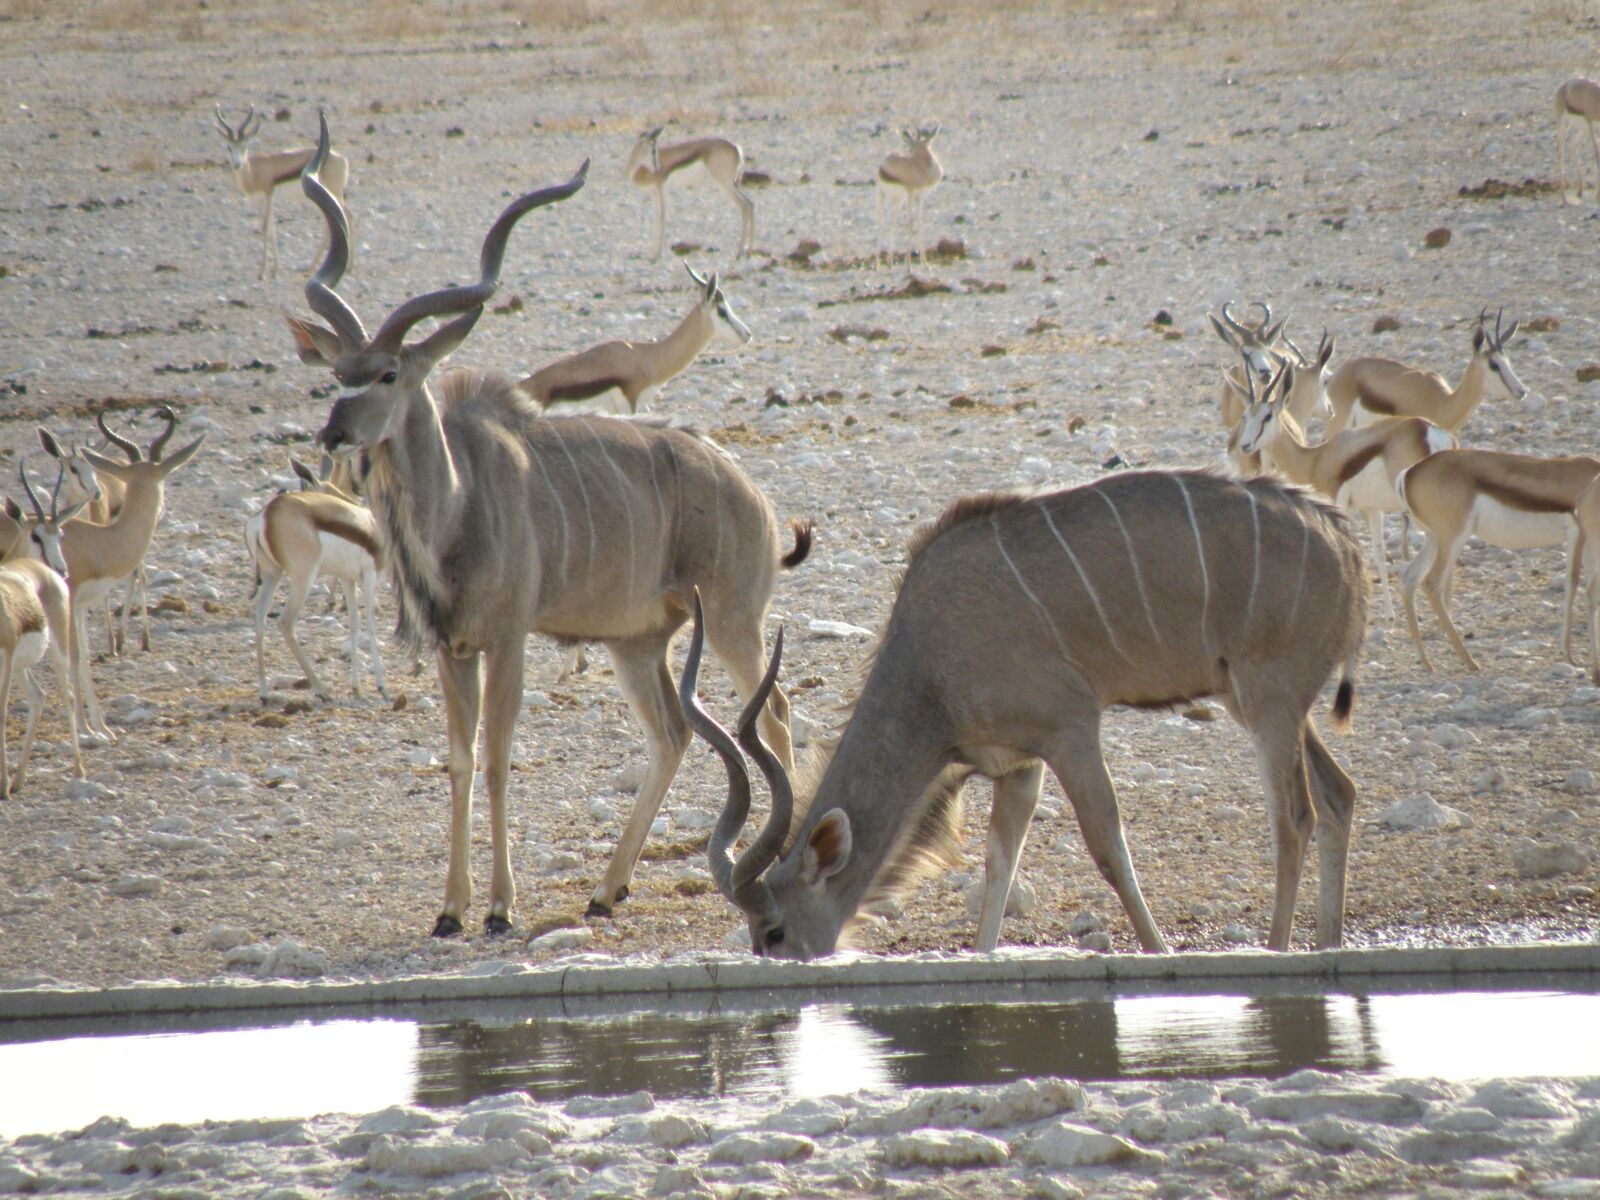 Olympus SP570UZ sample photo. Animal, wild, namibia photography